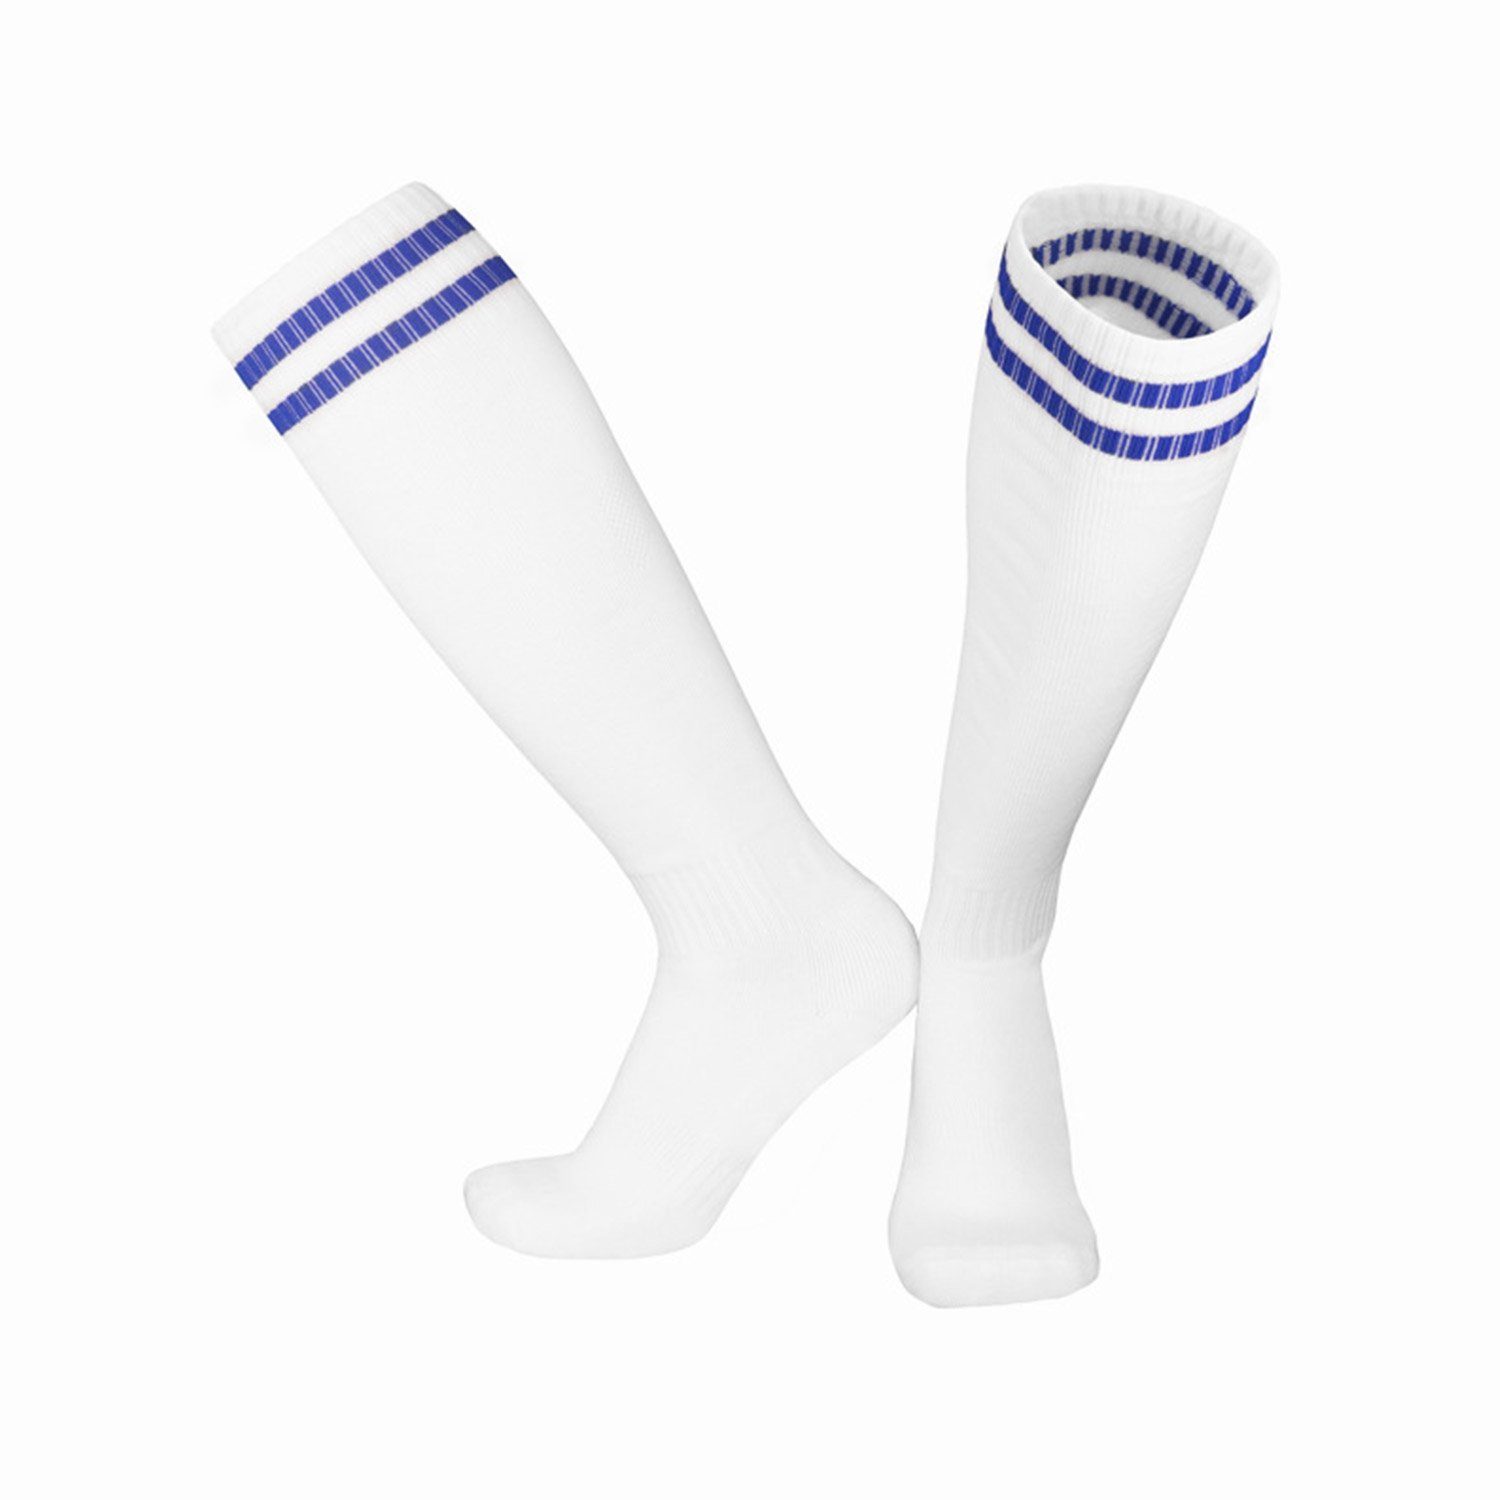 Neutral und Socken Fadenfäden -Socken Laufen für Weiß2 Kinderfußball Erwachsene Training Sportsocken Fußballtraining, MAGICSHE Socken Bewegung